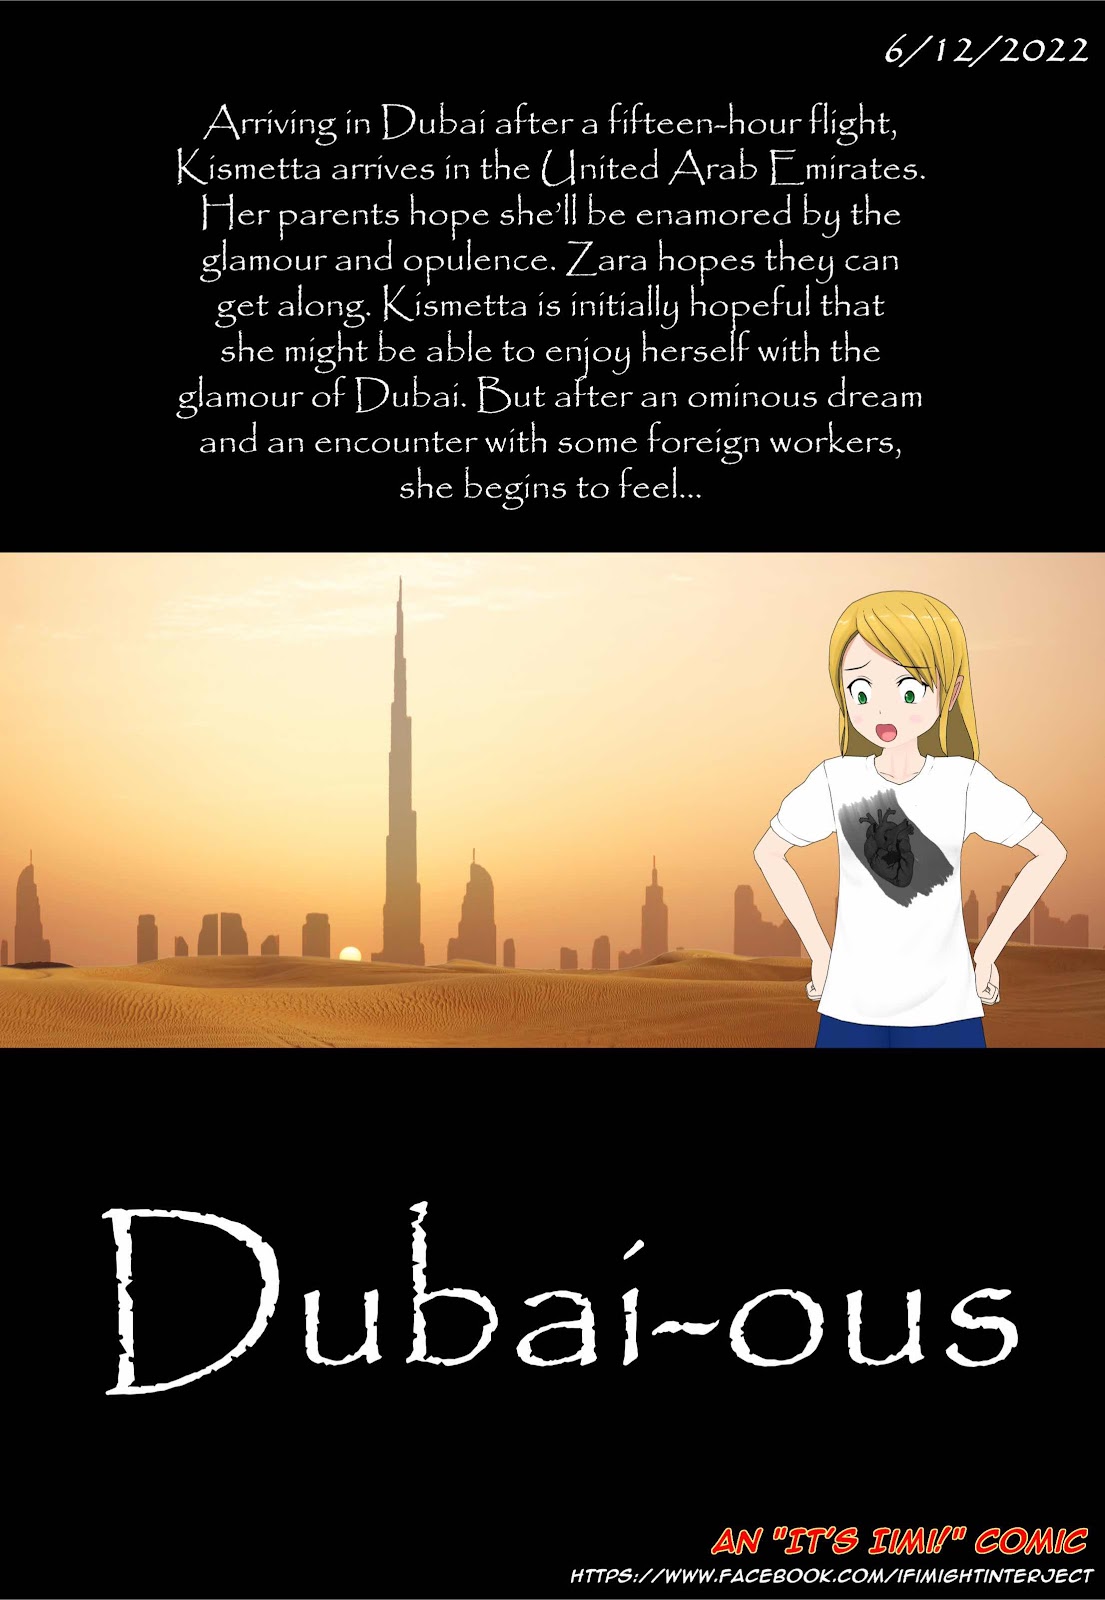 It’s Iimi: Dubai-ous!